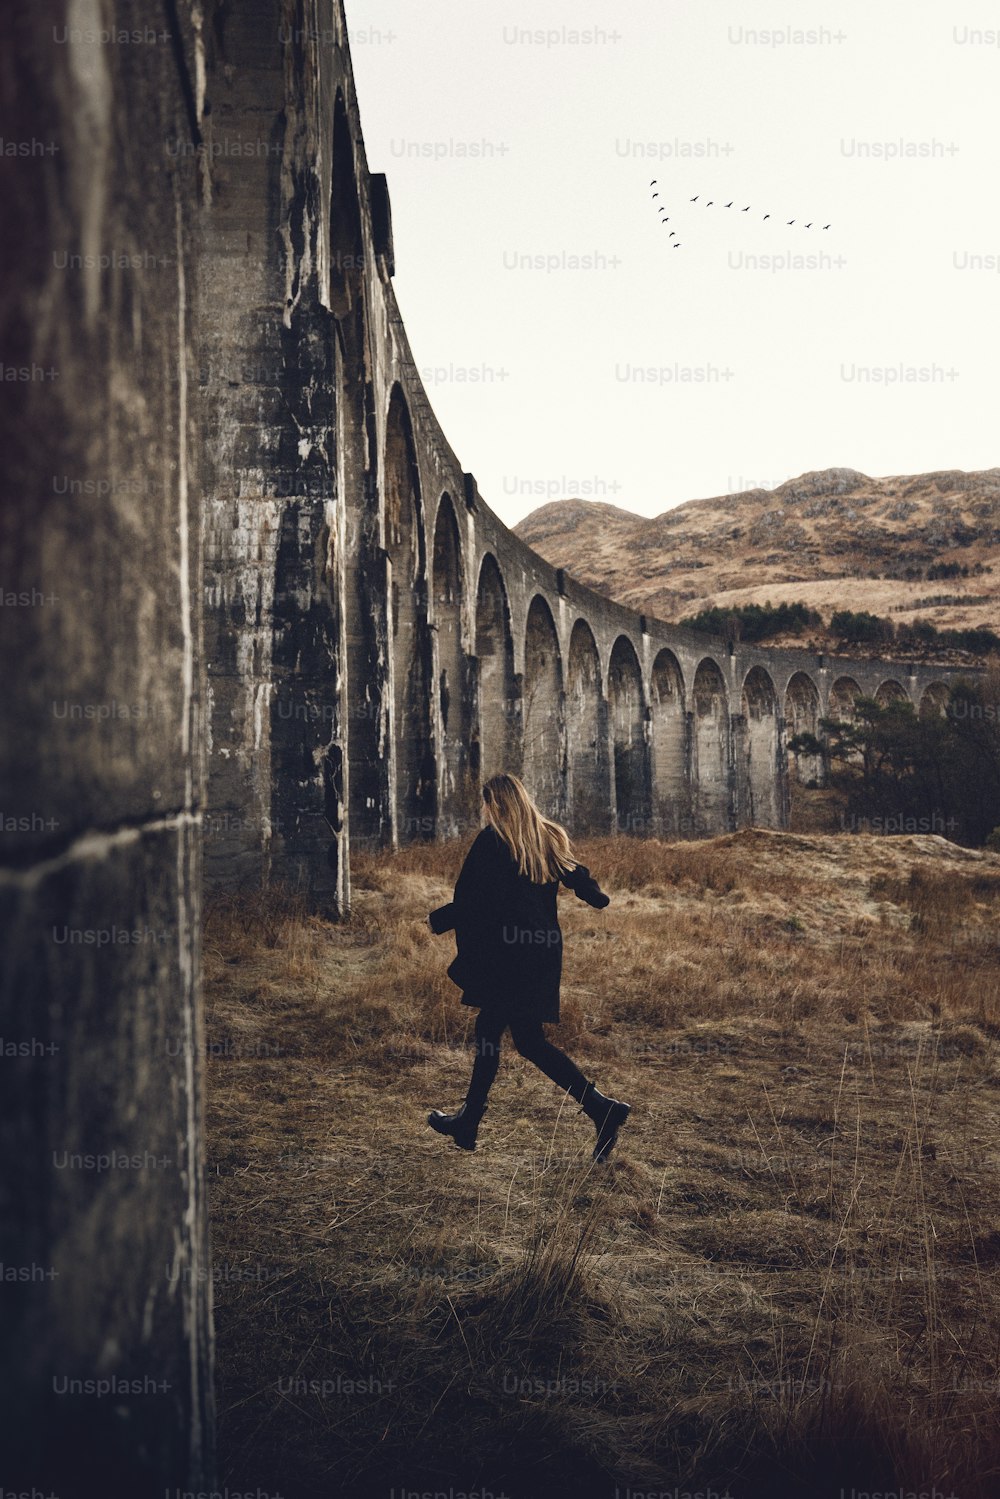 a woman is running in a field near a bridge